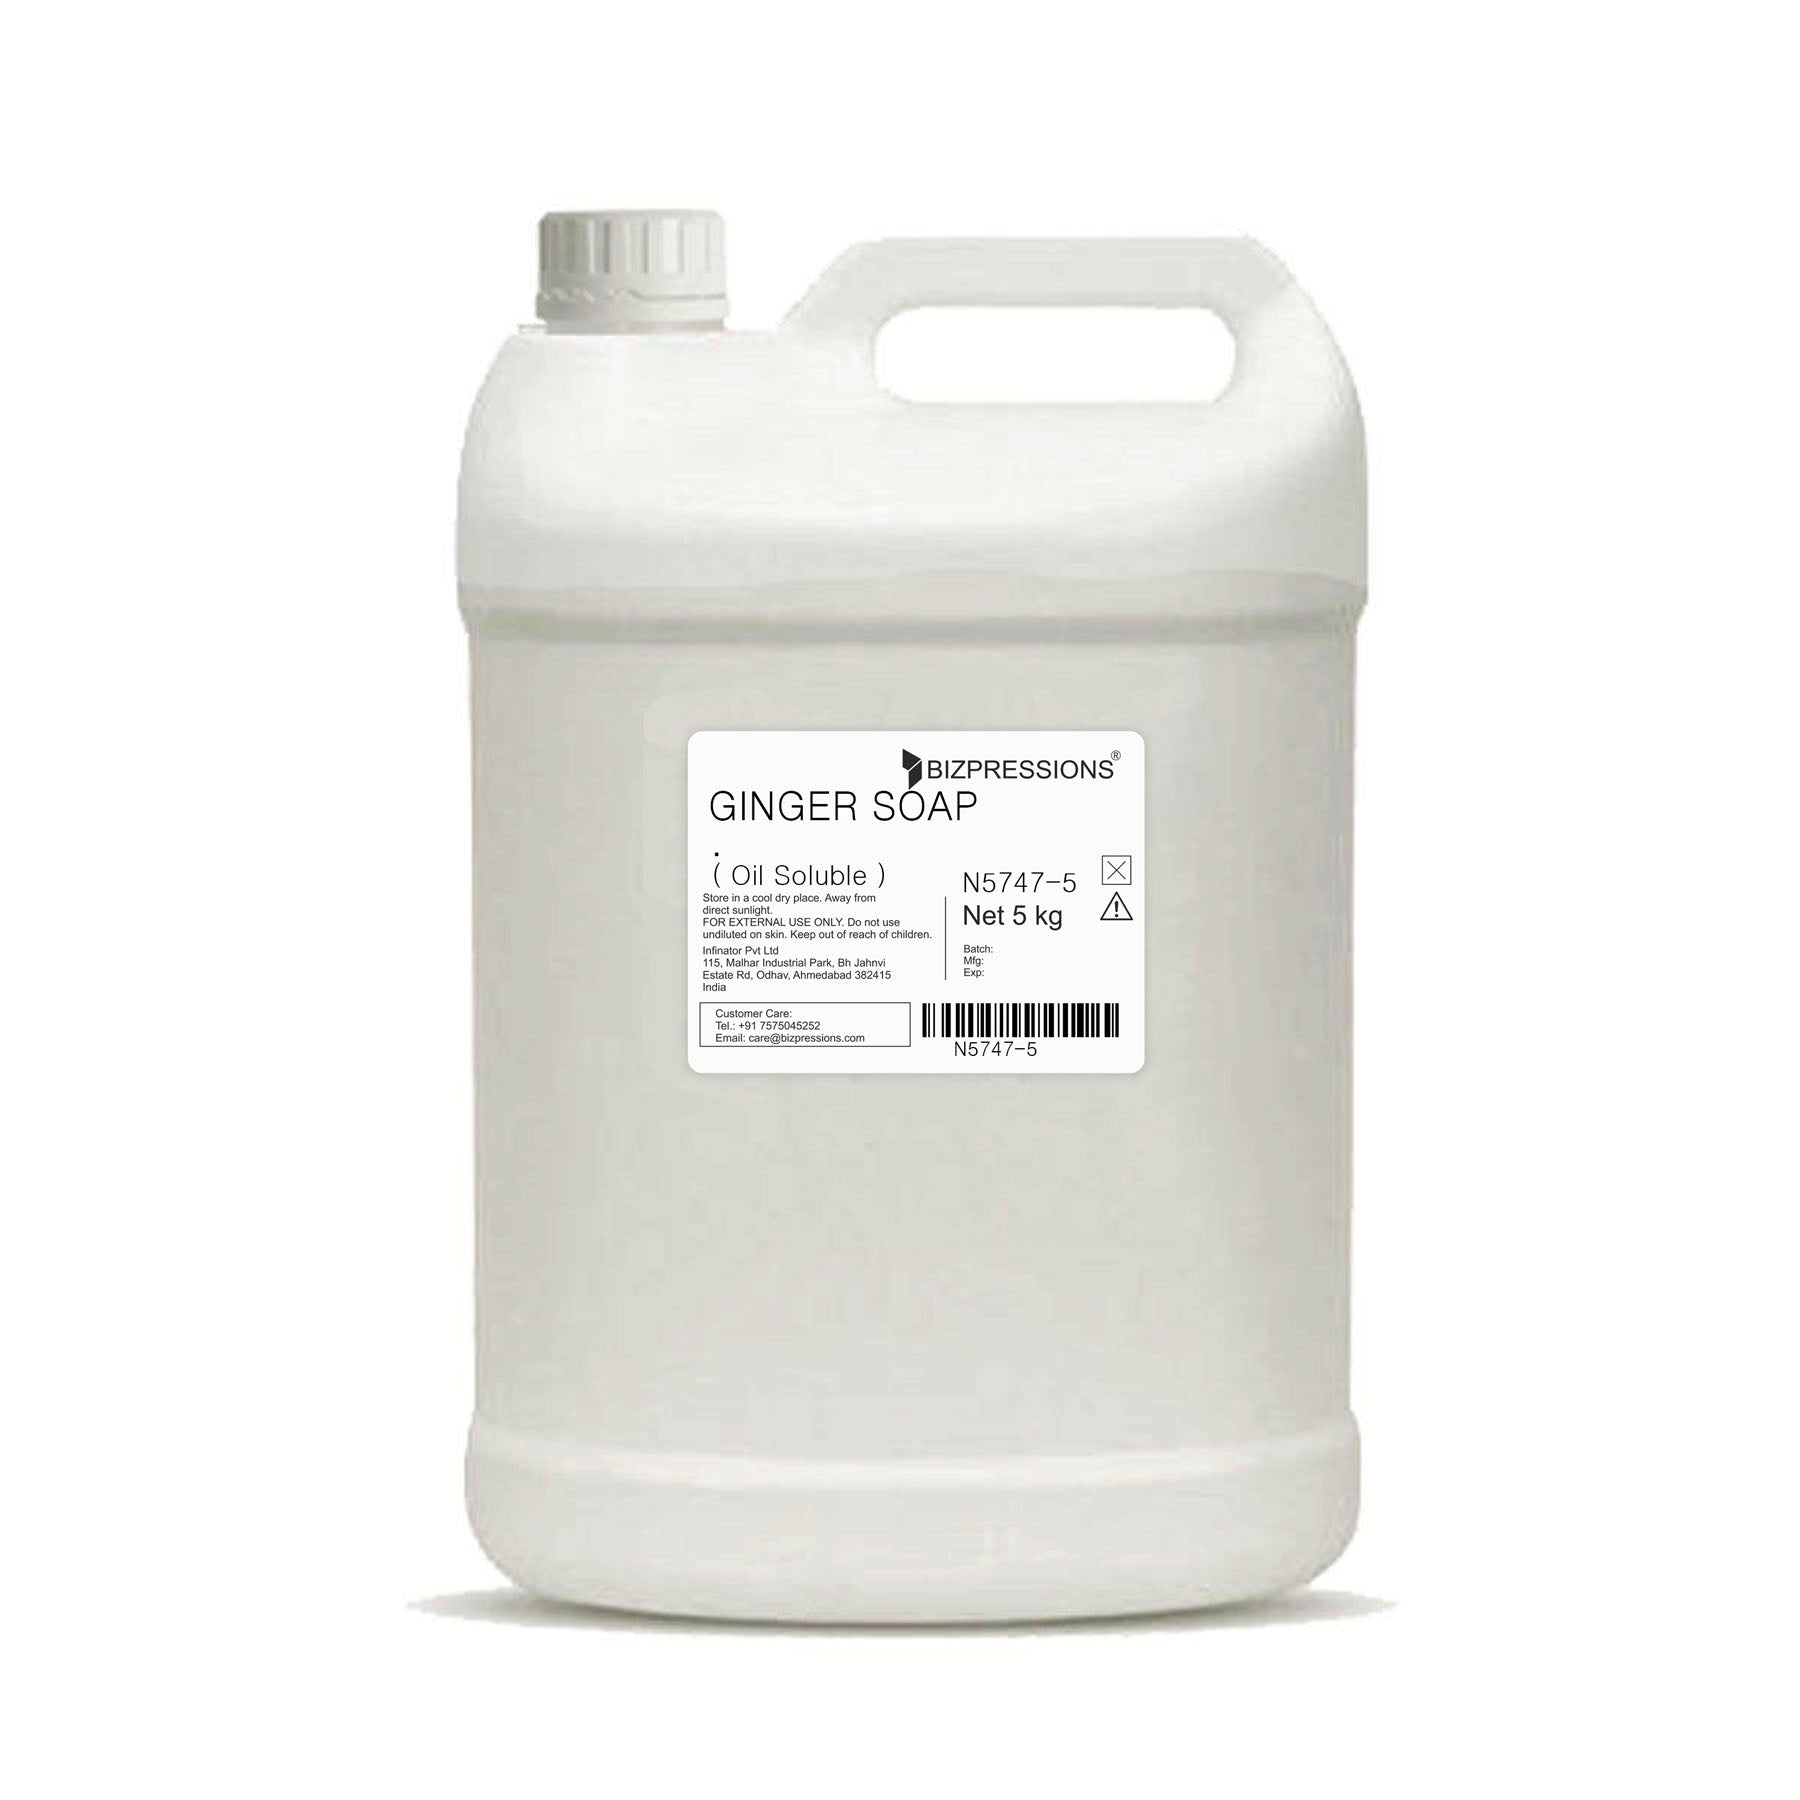 GINGER SOAP - Fragrance ( Oil Soluble ) - 5 kg